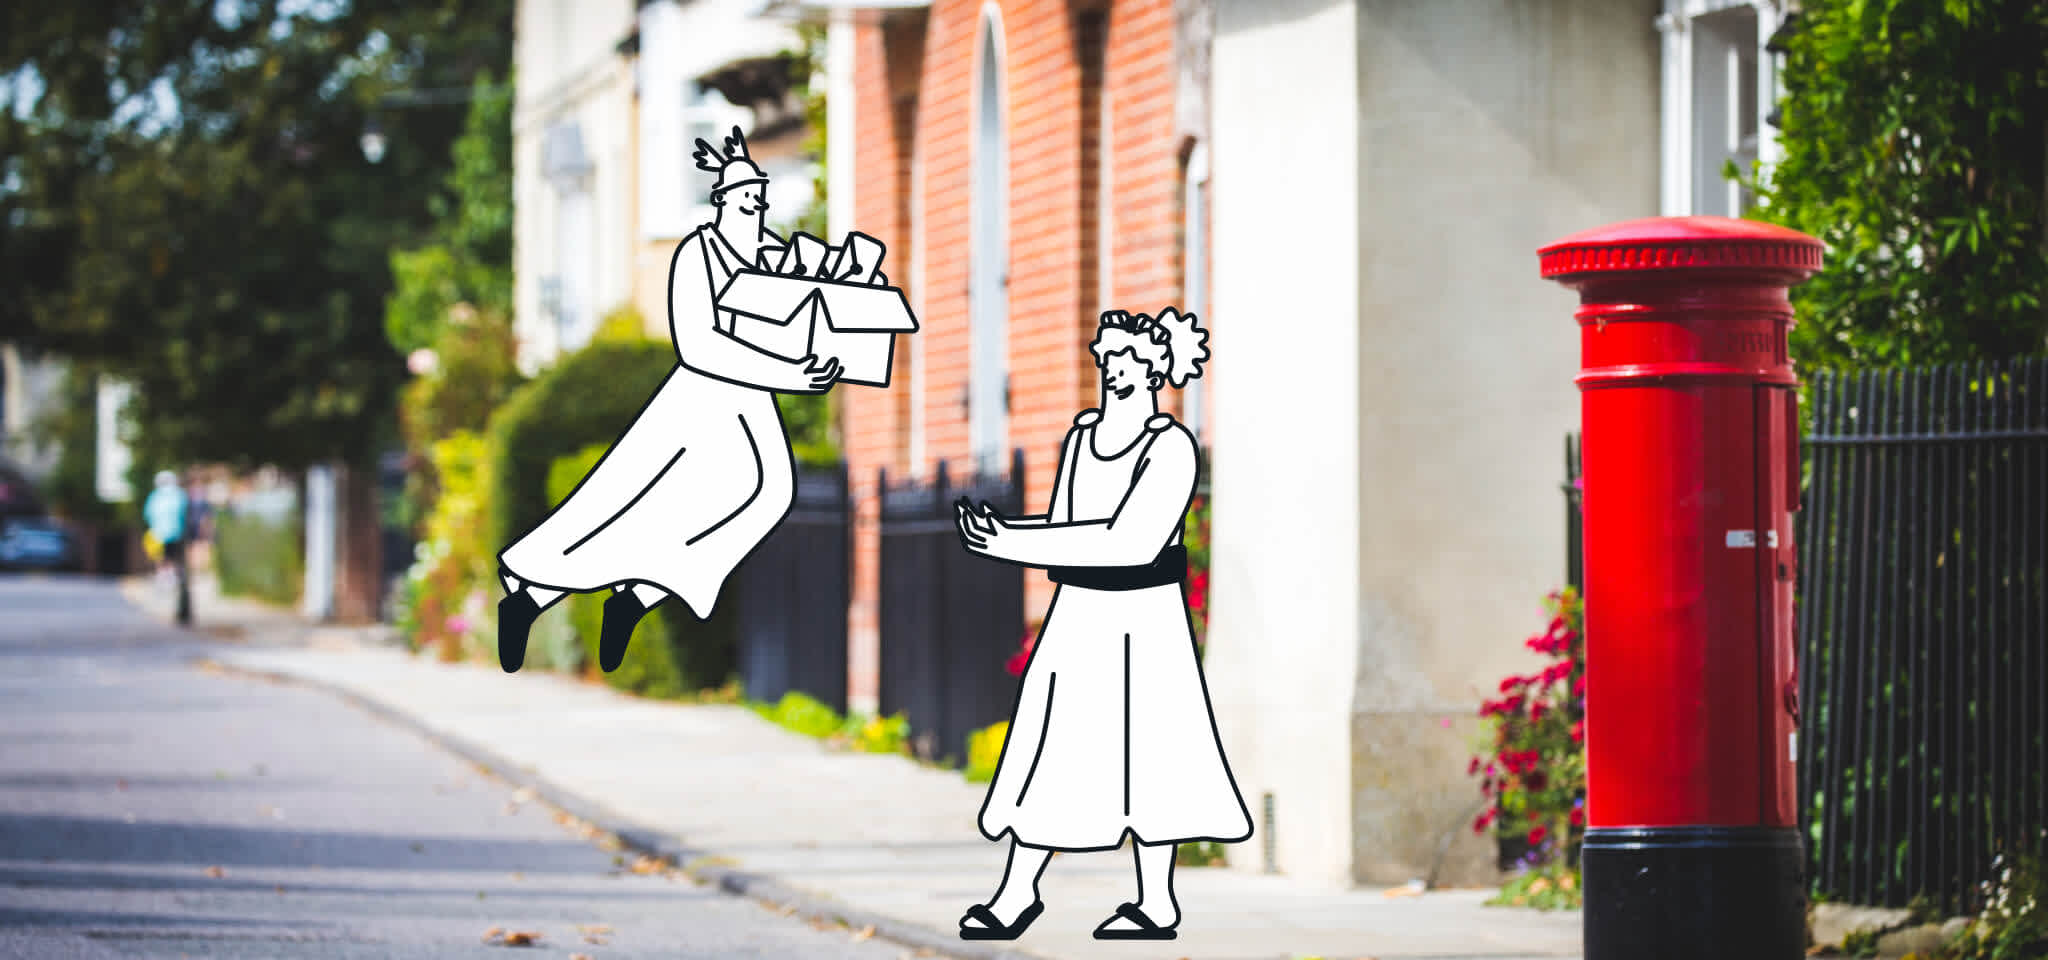 Hermes entrega cartas a una diosa en la calle